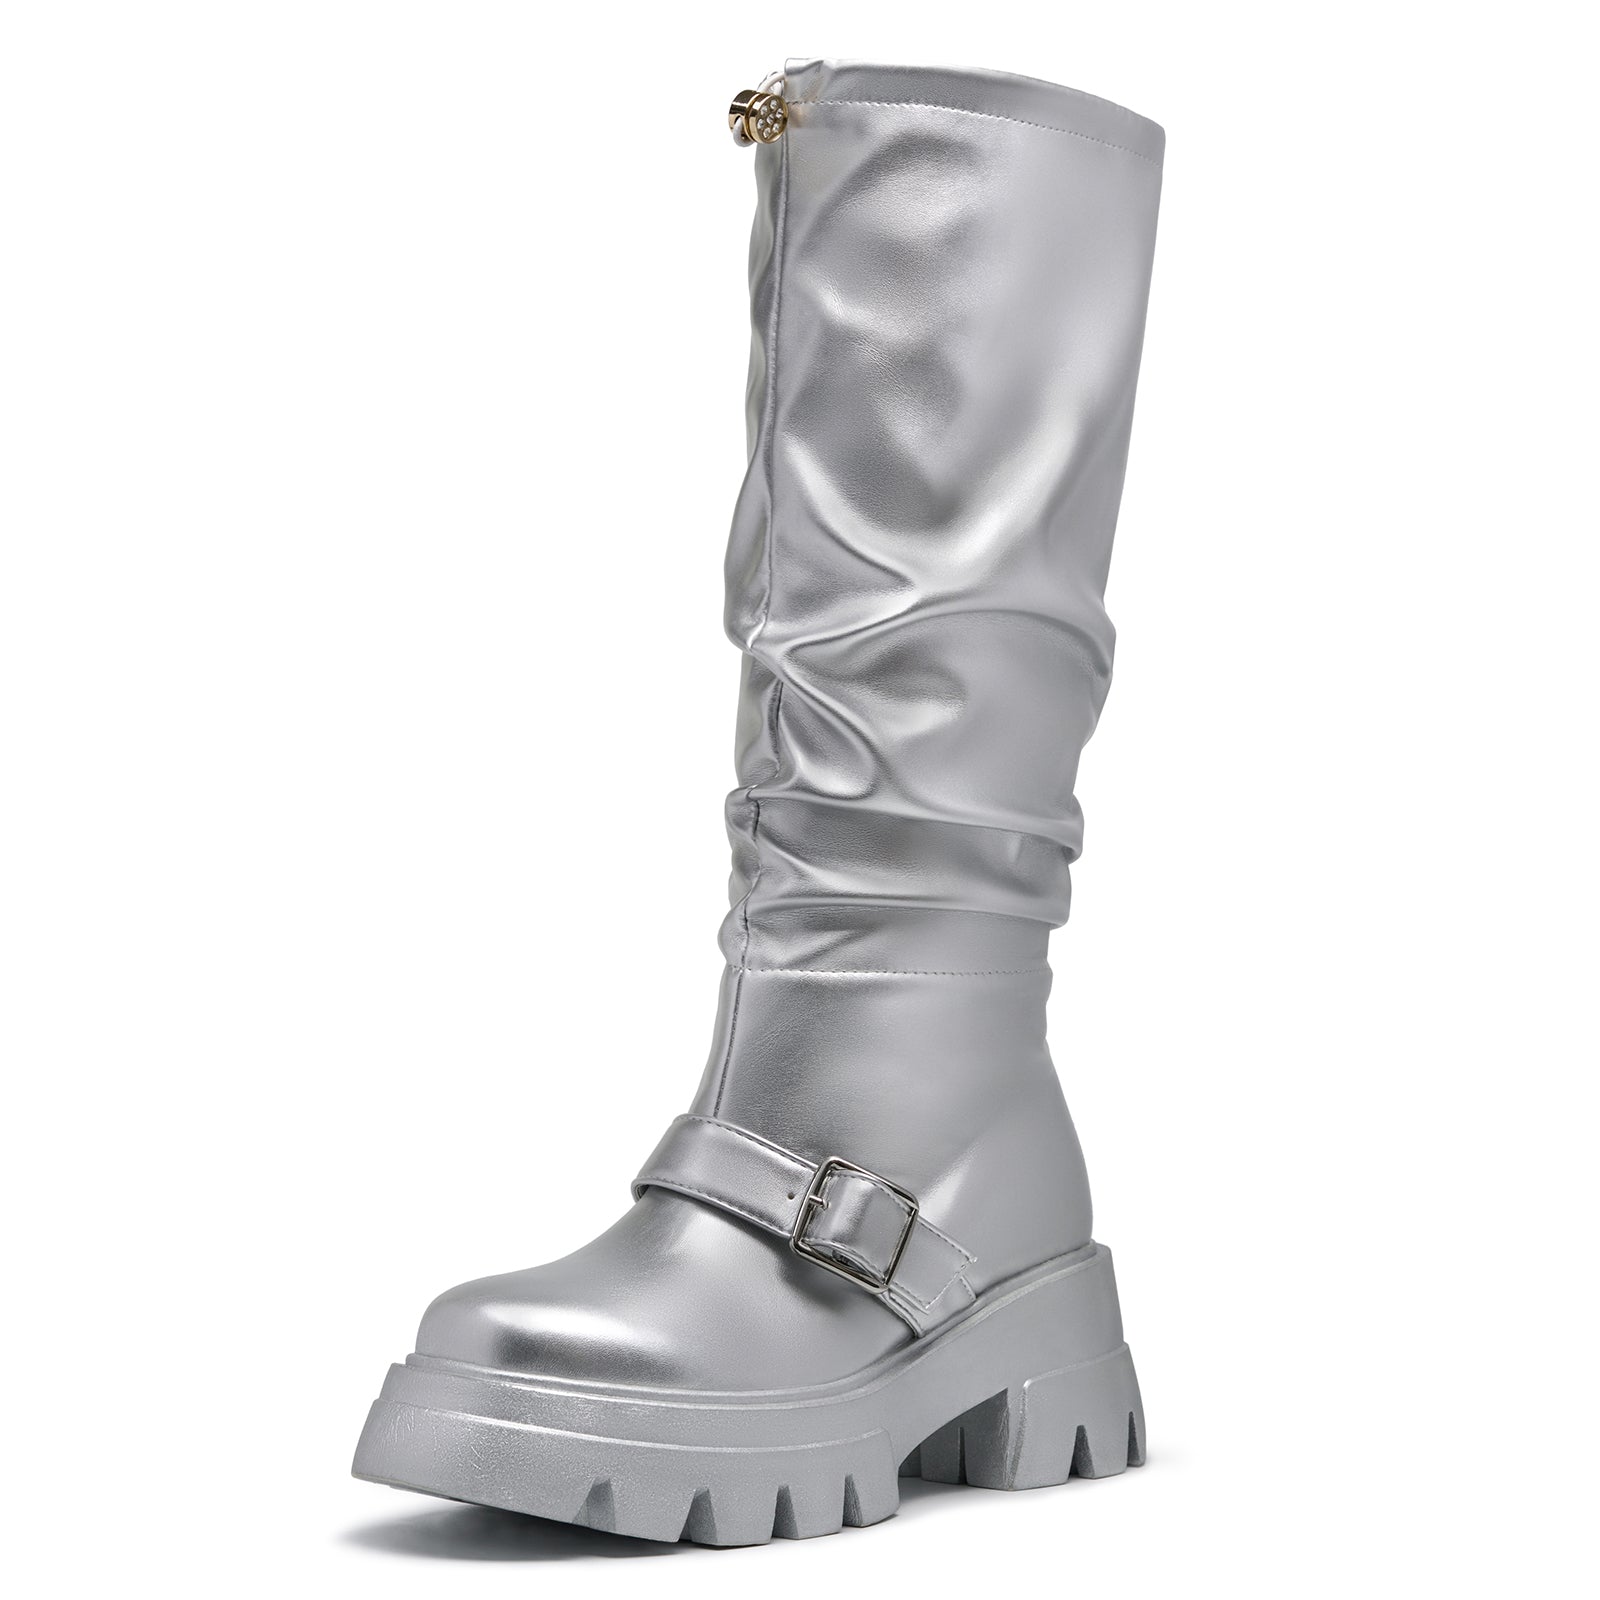 Metallic Platform Knee High Boots For Women